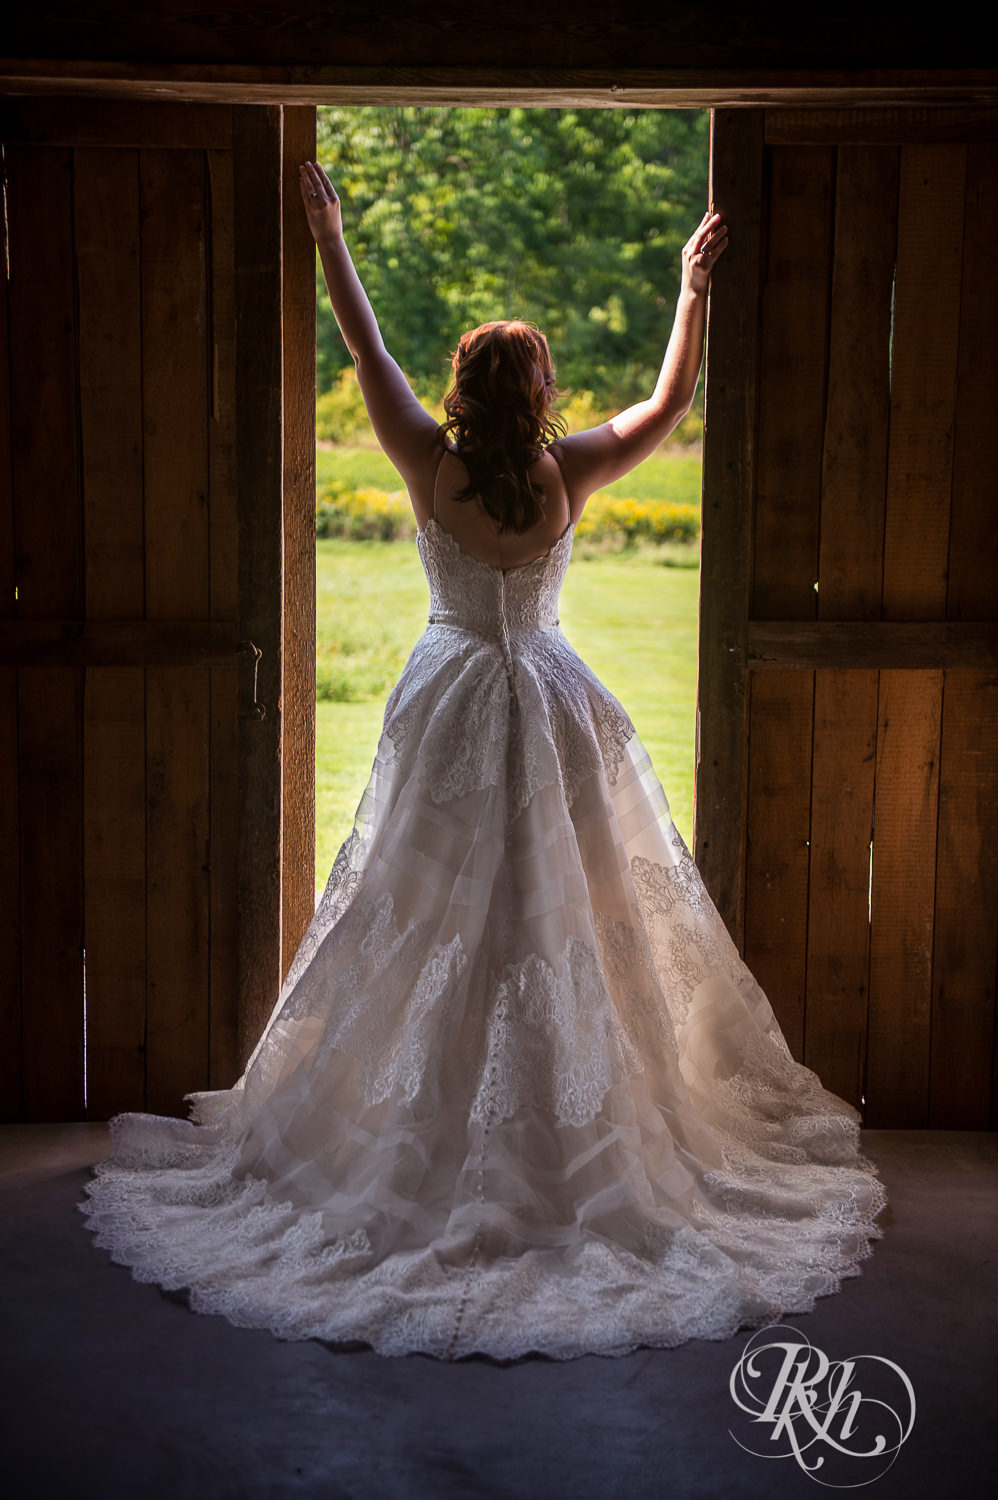 Bride standing between open barn doors during barn wedding at Birch Hill Barn in Glenwood City, Wisconsin.